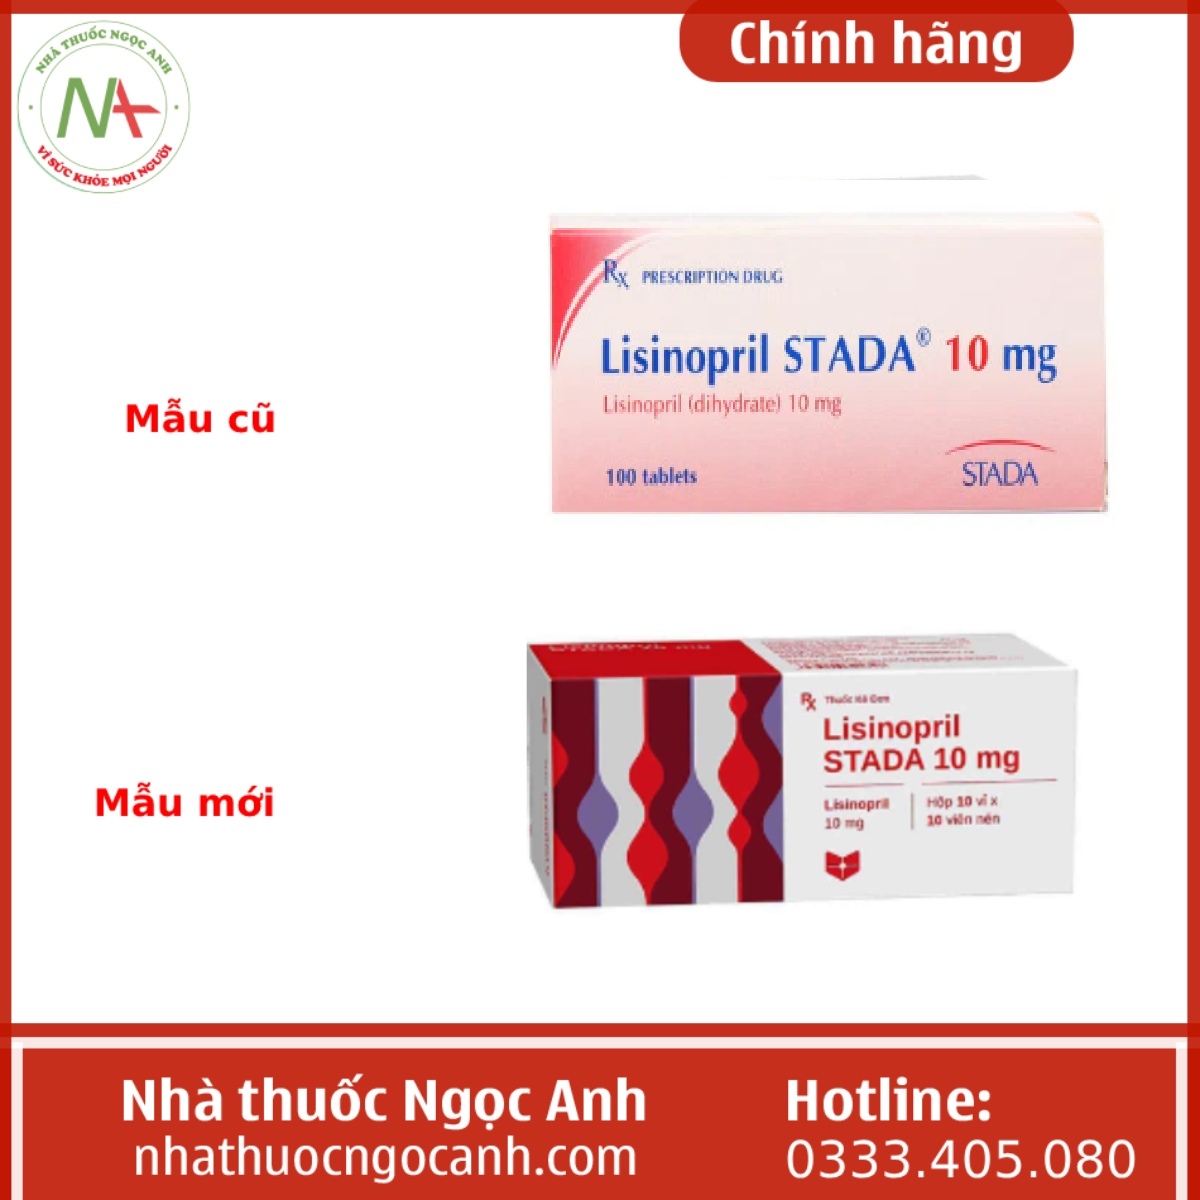 Lisinopril Stada 10 mg mẫu cũ và mới